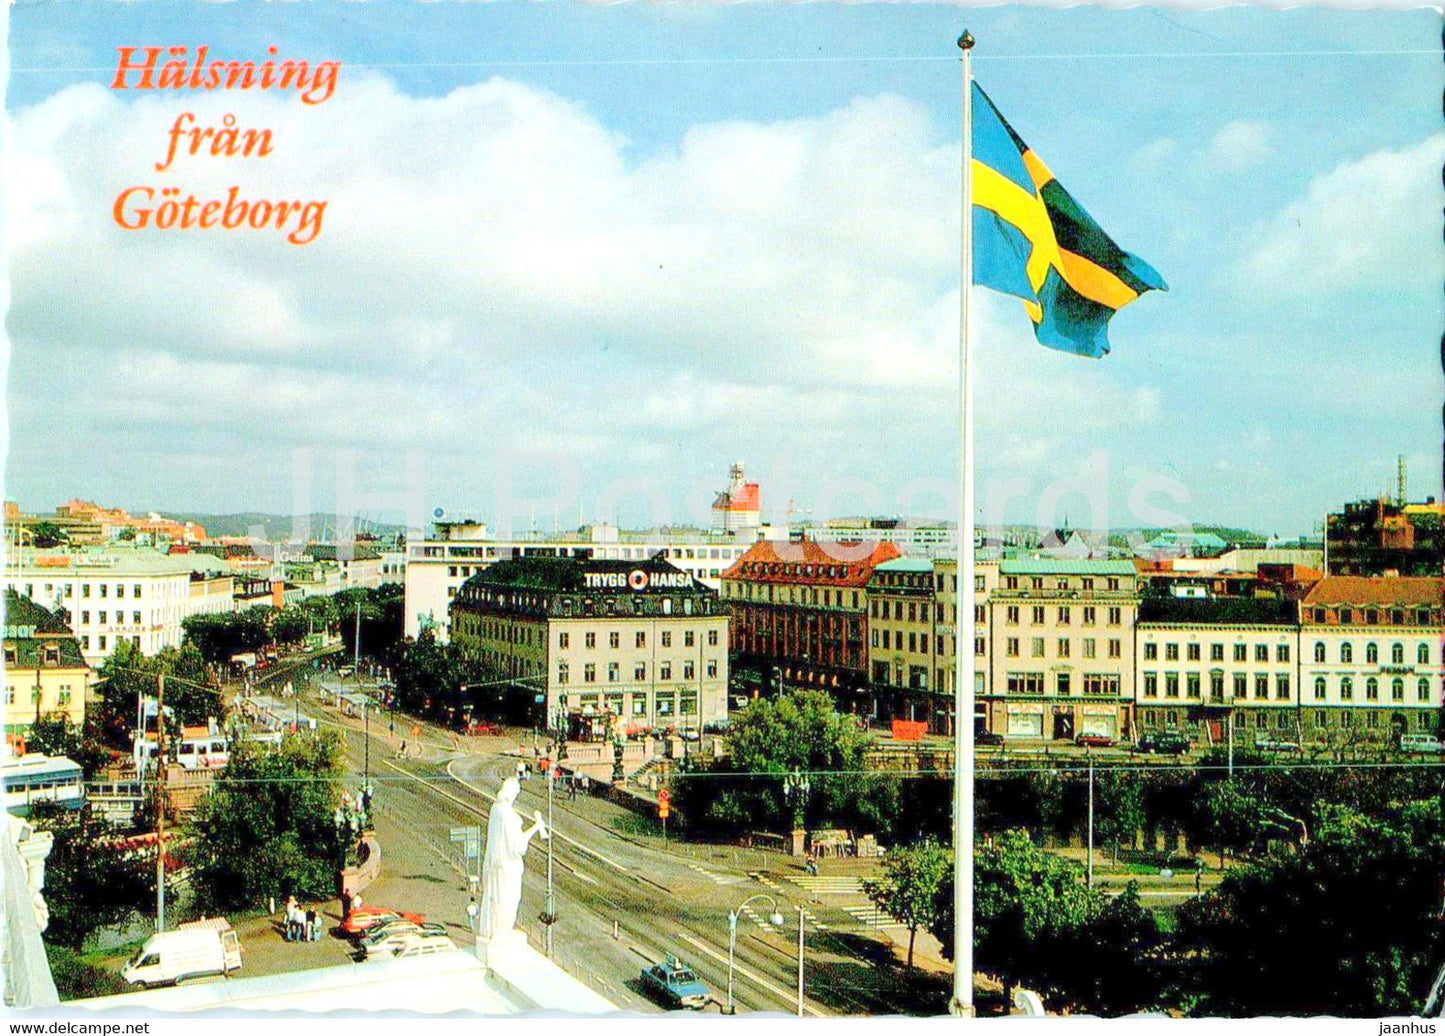 Halsning fran Goteborg - Kungsportsplatsen - Sweden - unused - JH Postcards